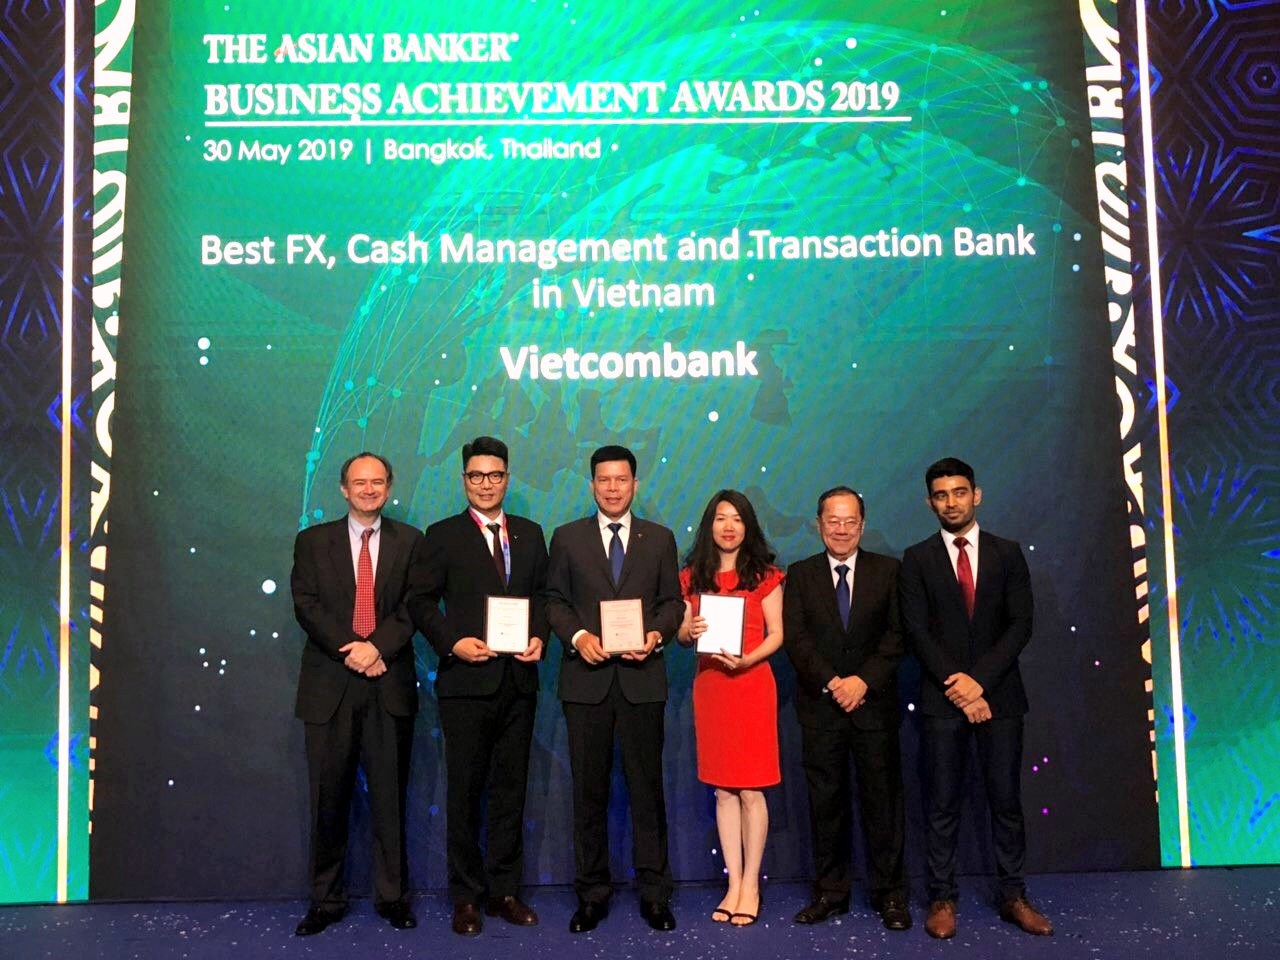 Đại diện Vietcombank, ông Phạm Mạnh Thắng – Phó Tổng Giám đốc (thứ 3 từ trái sang) và bà Phan Khánh Ngọc – Trưởng phòng Quan hệ Công chúng Trụ sở chính (thứ 3 từ phải sang) nhận giải thưởng do The Asian Banker trao tặng